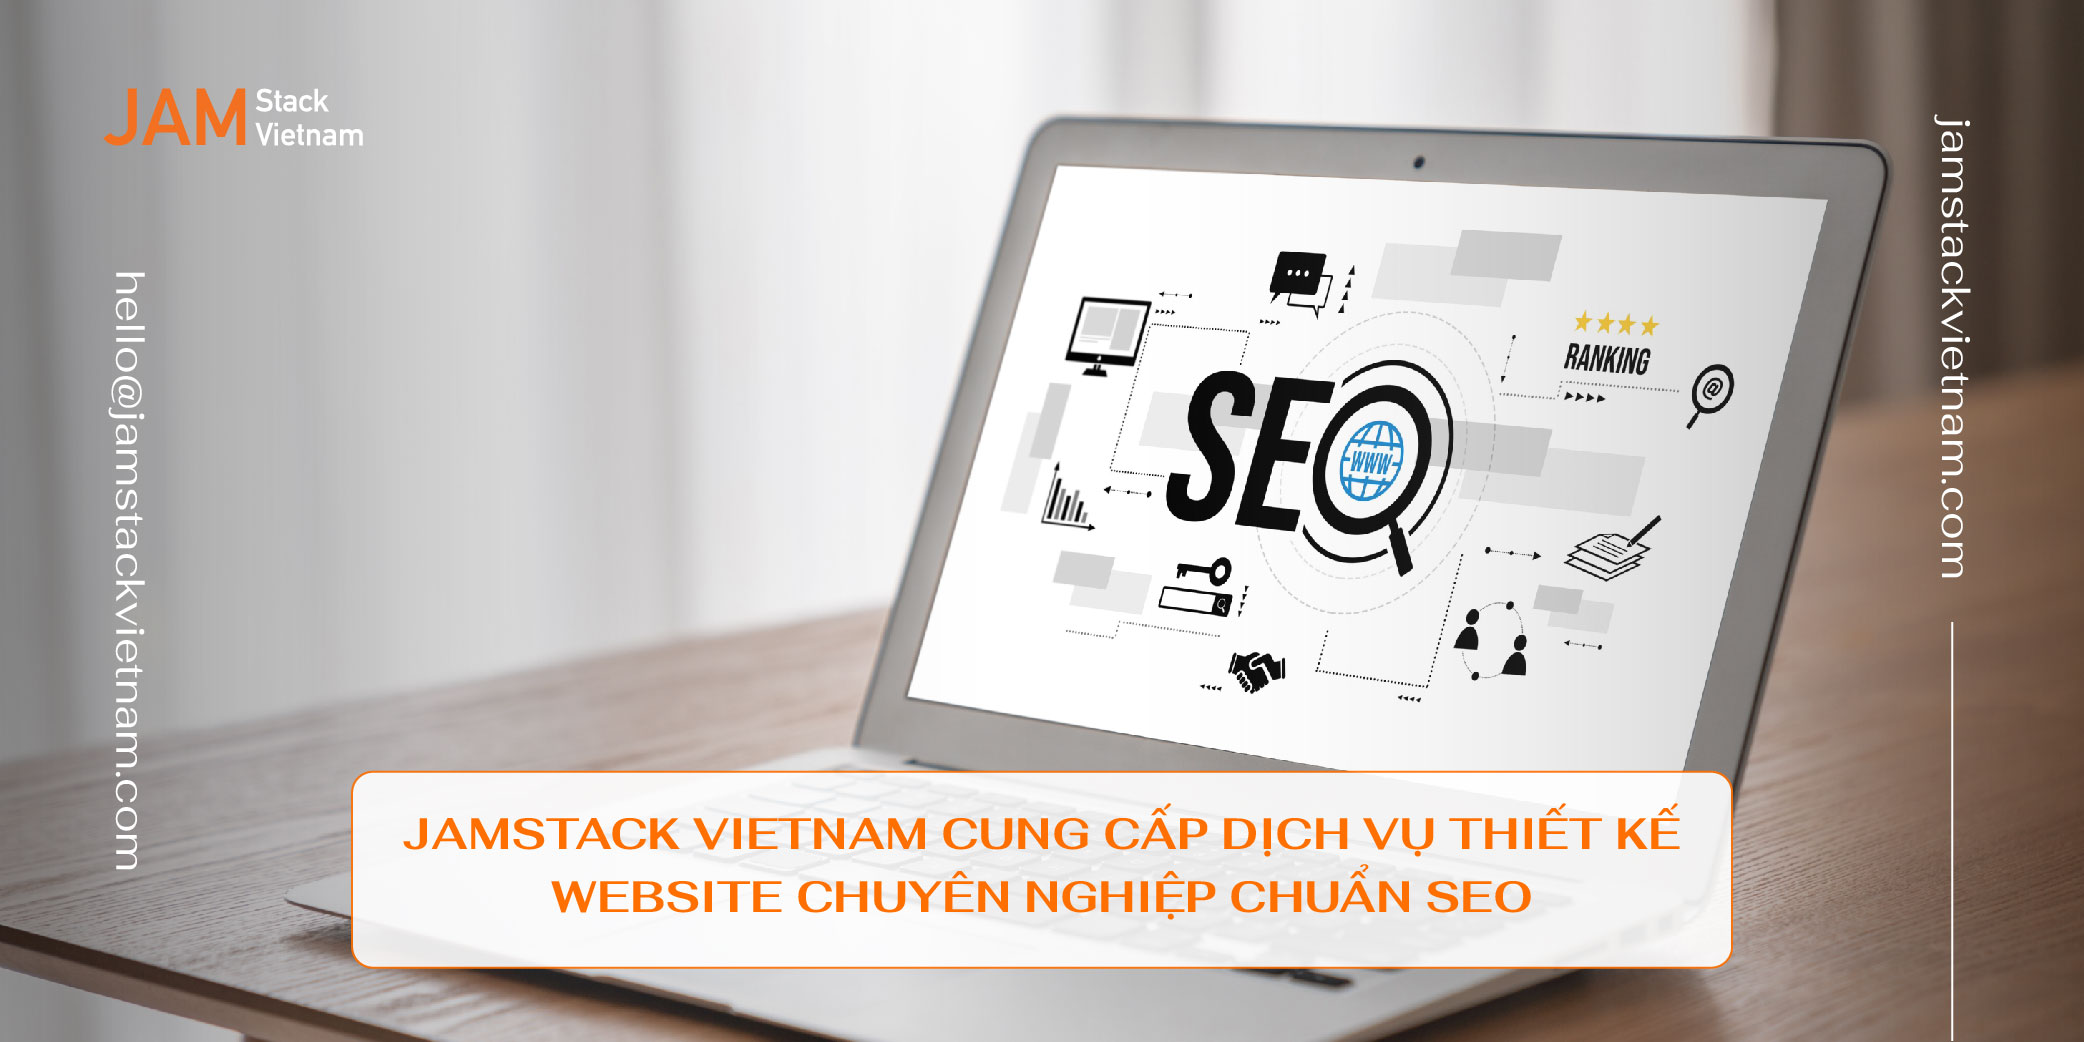 JAMstack Vietnam cung cấp dịch vụ thiết kế website chuyên nghiệp chuẩn SEO